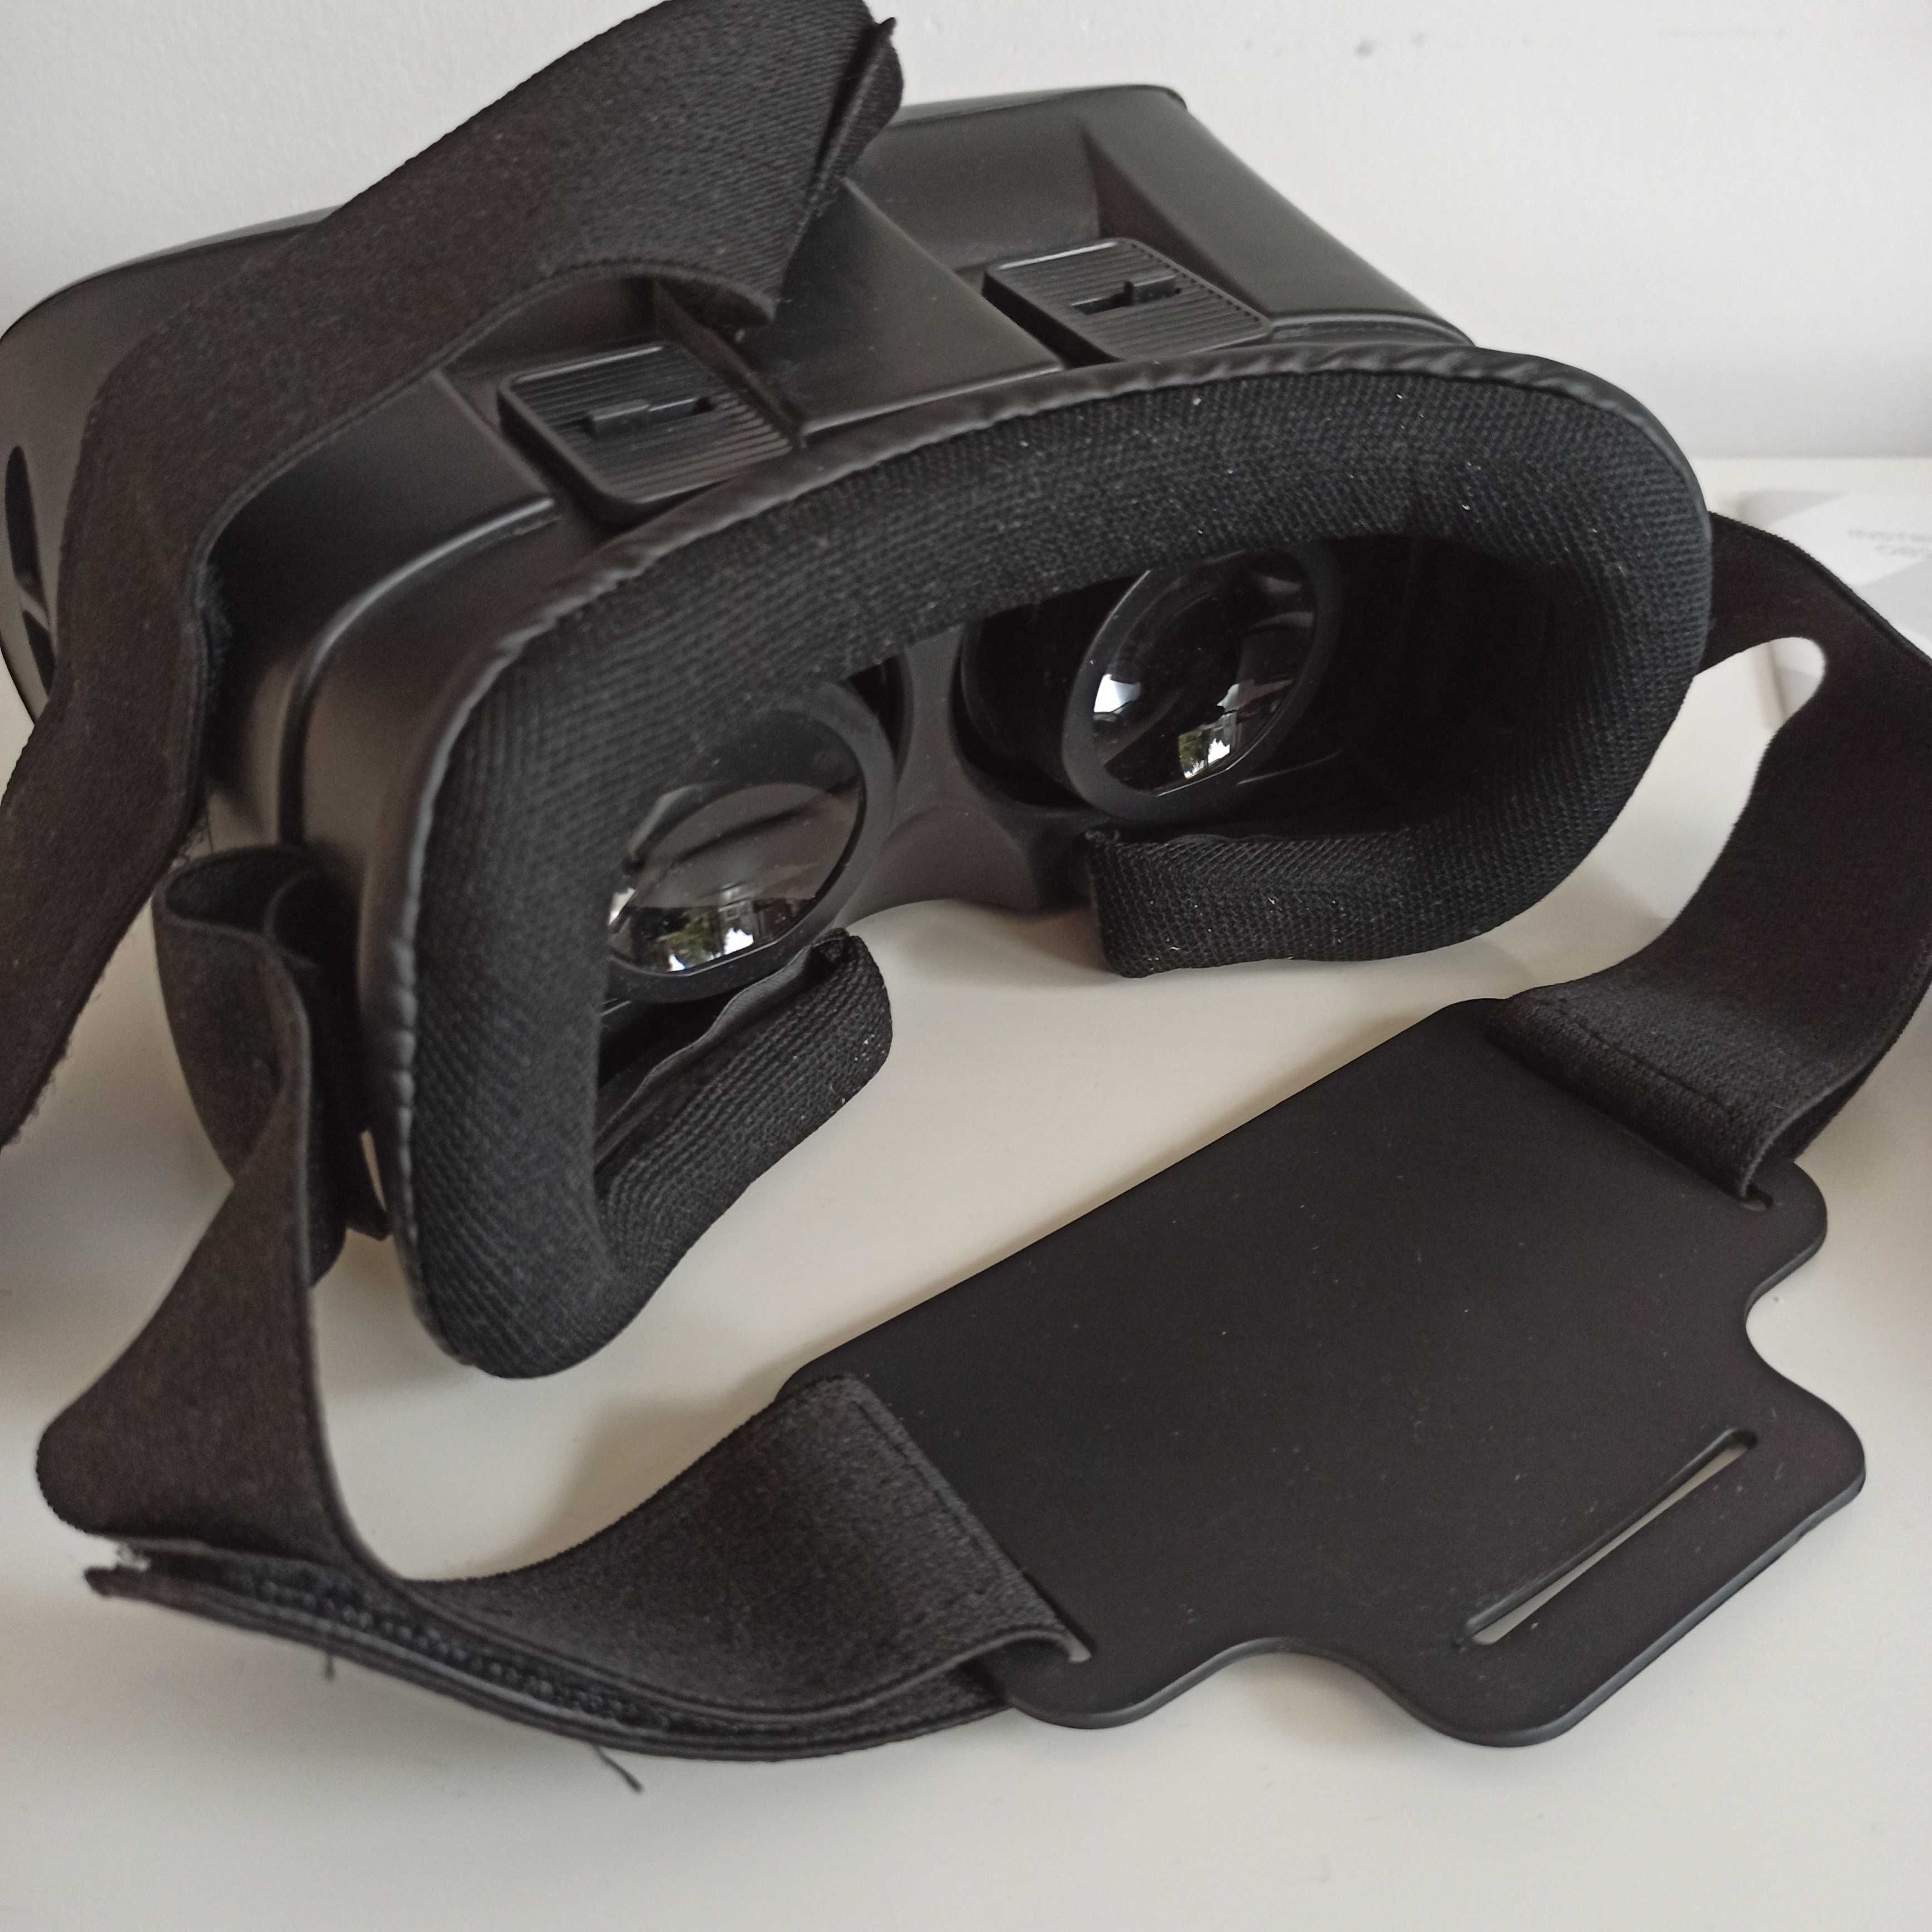 Hykker Gogle VR Glasses 3D + pilot BT